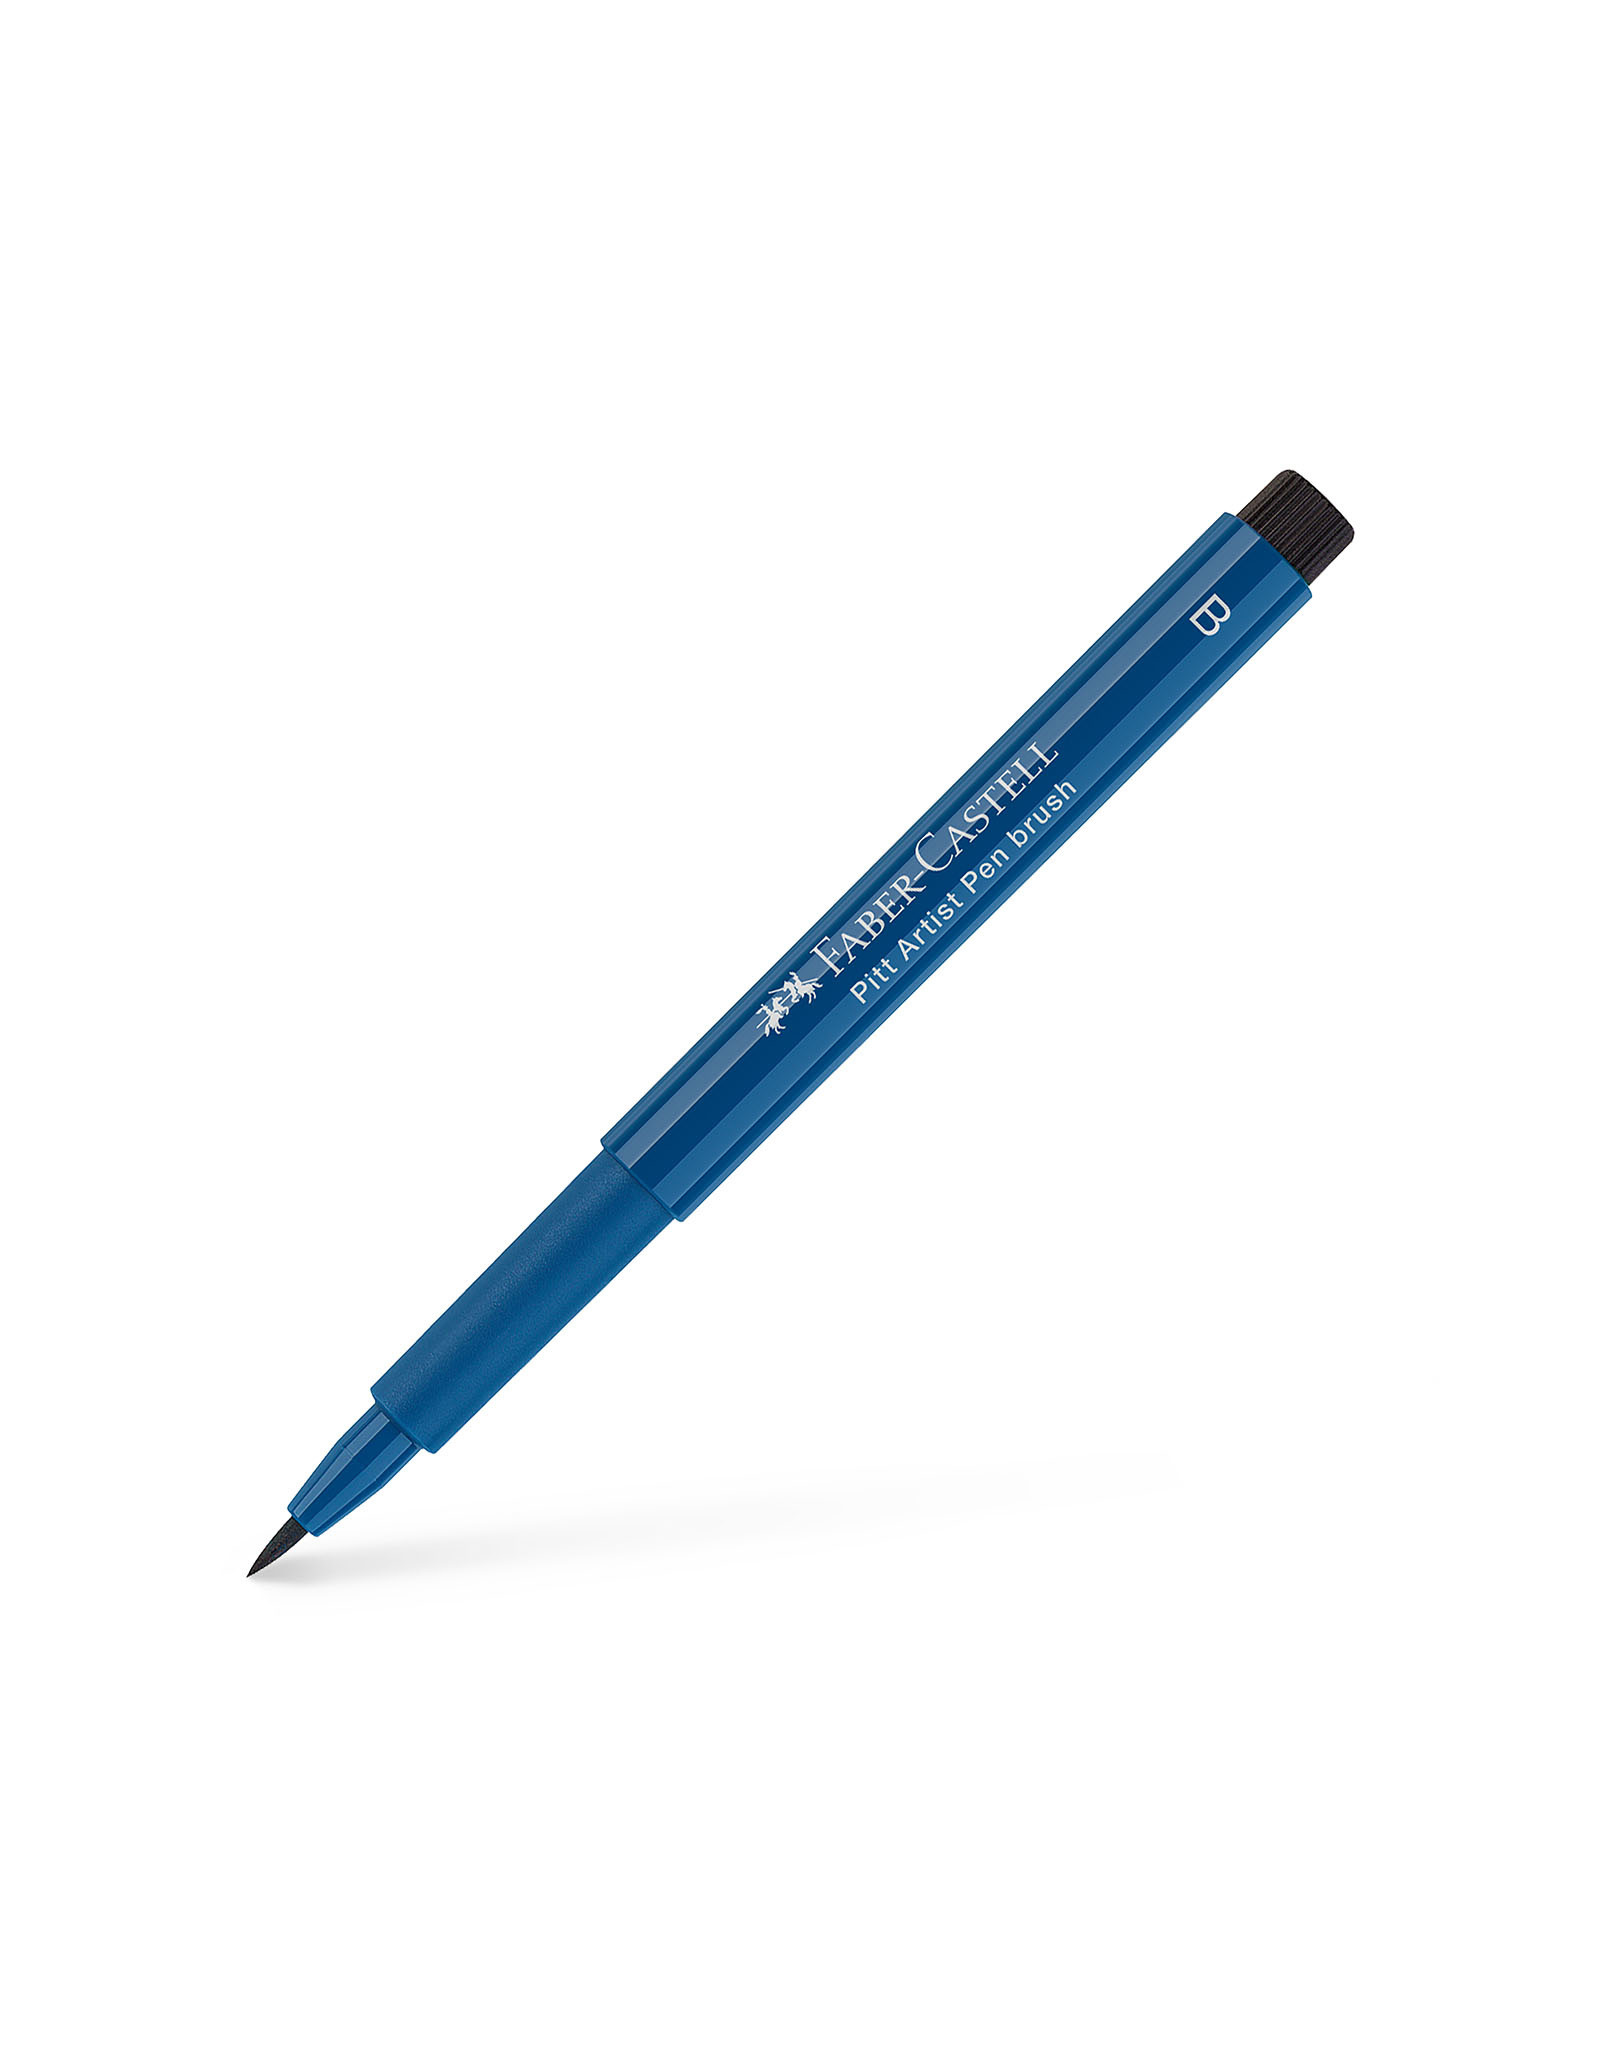 FABER-CASTELL Pitt Artist Pen, Brush, Indanthrene Blue